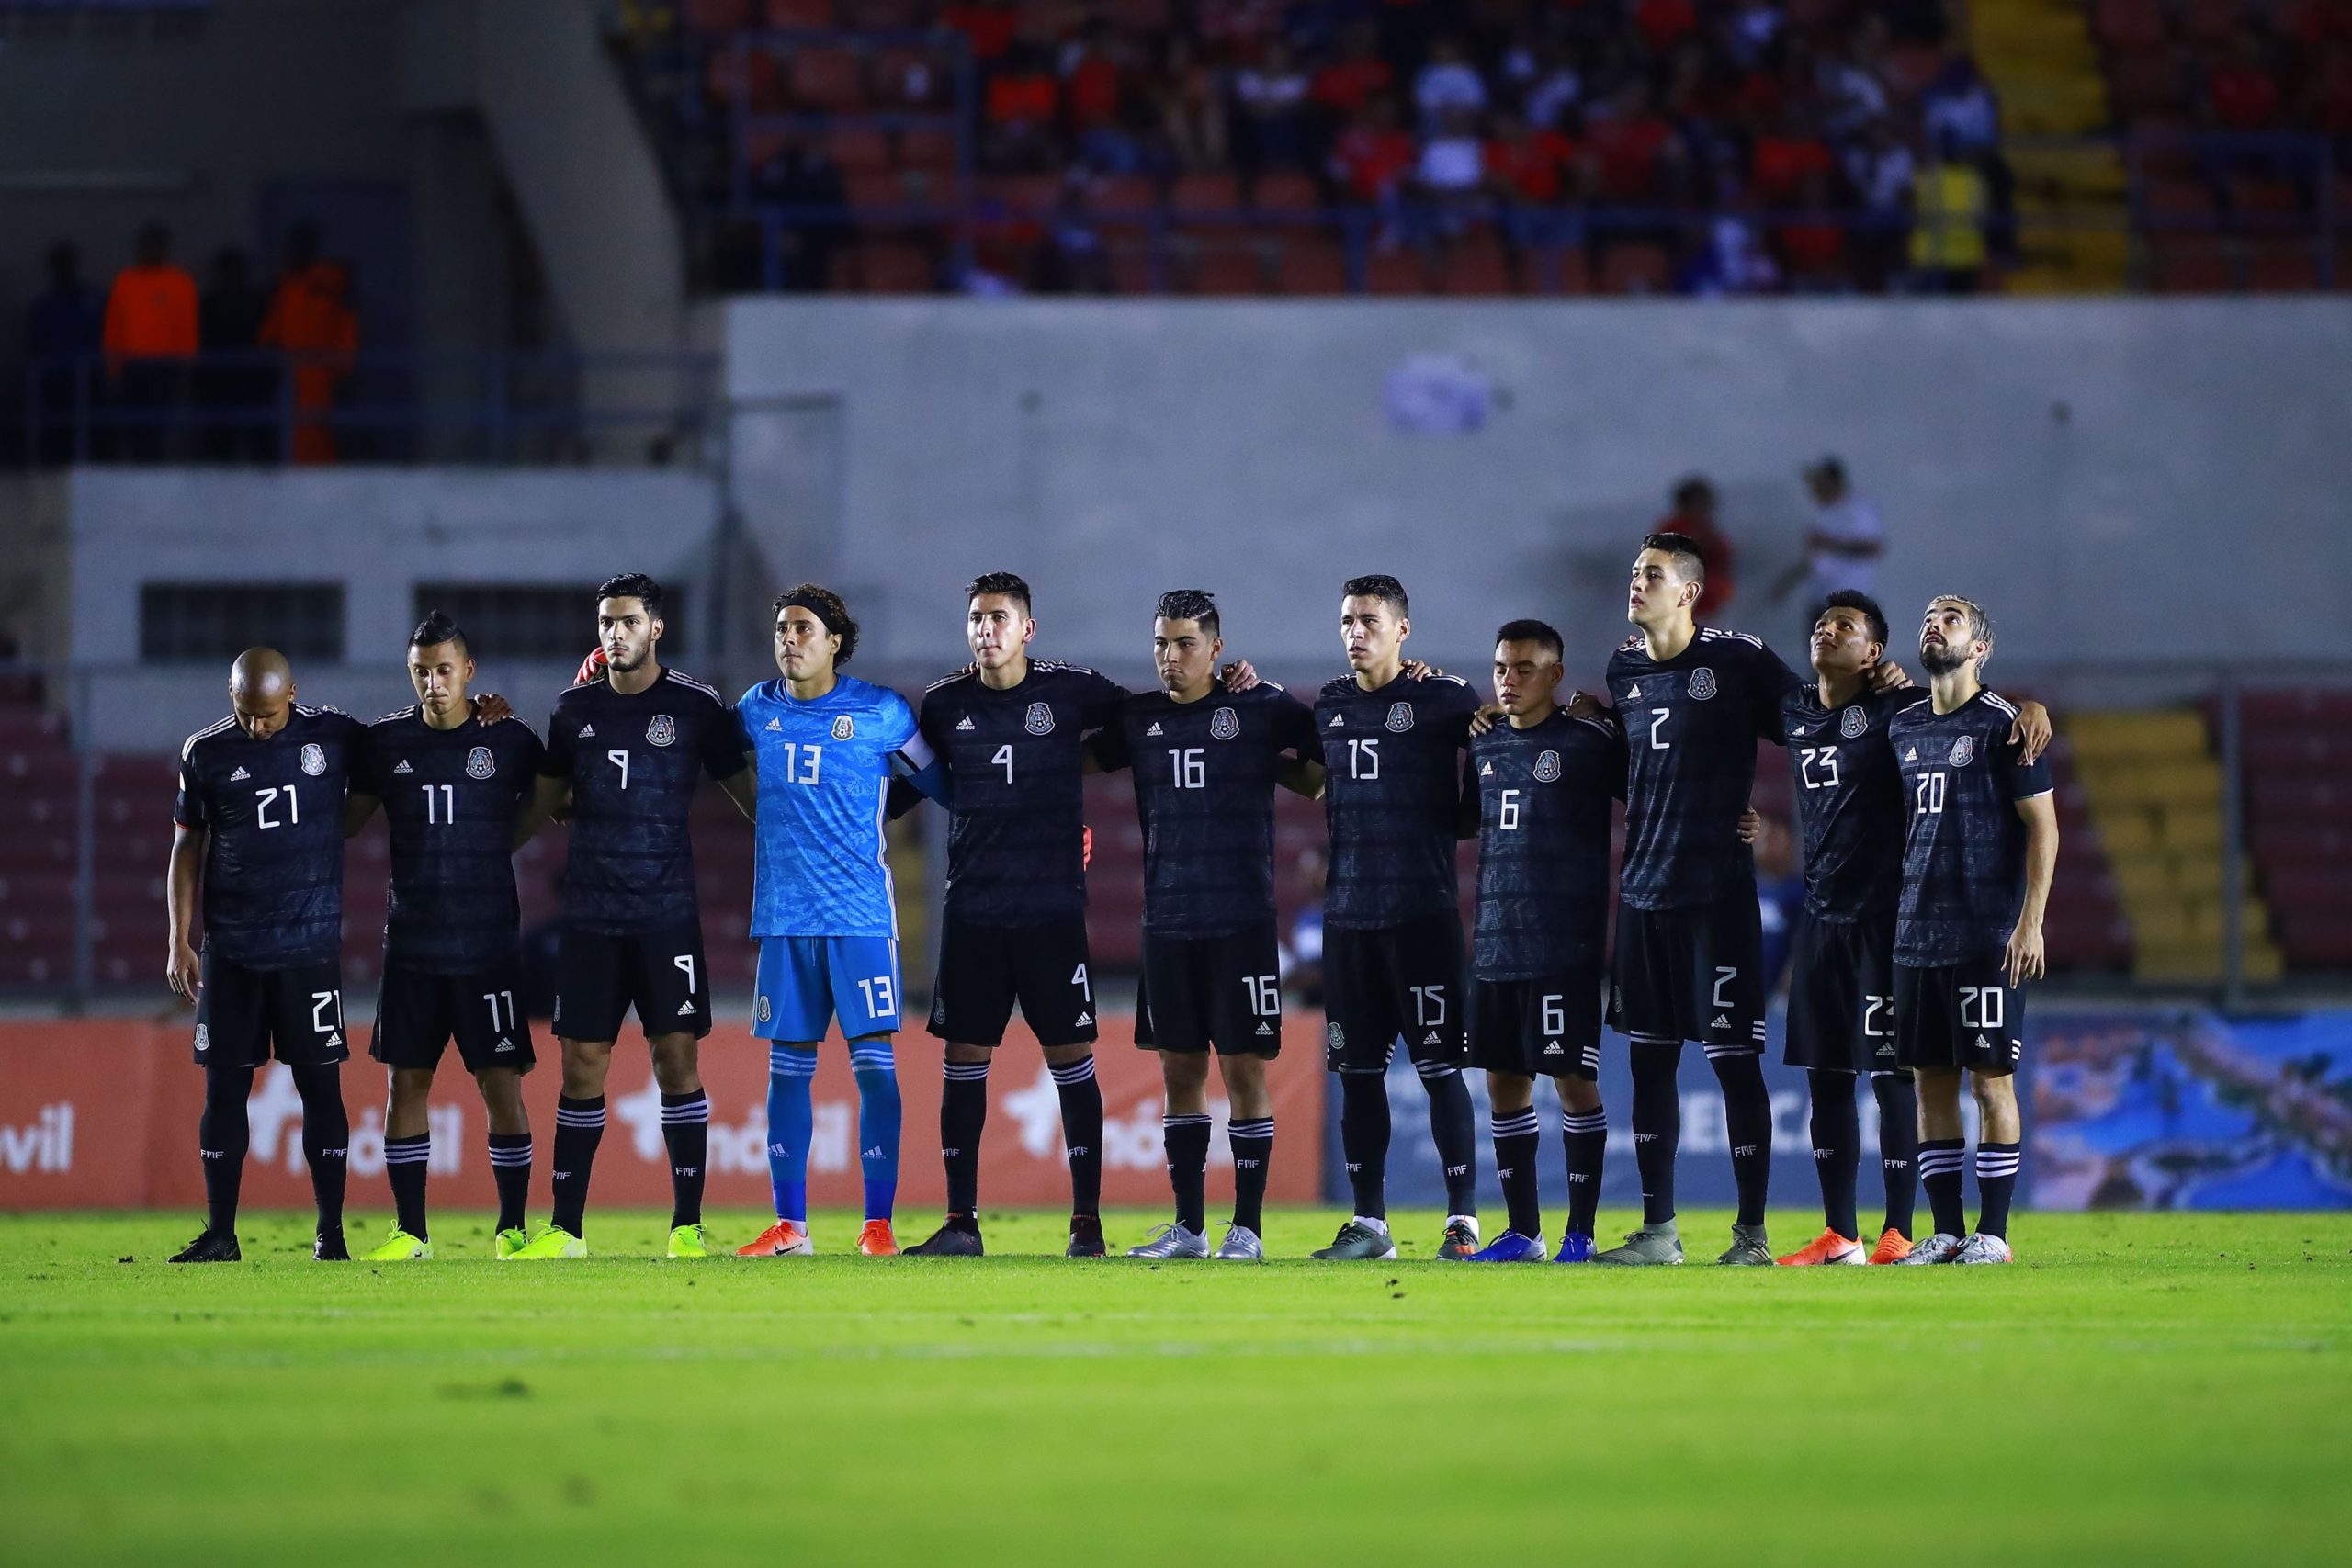 La Selección Nacional Mexicana de futbol mejor que Alemania e Italia en ranking de la FIFAFoto/ @Miselecciónmx